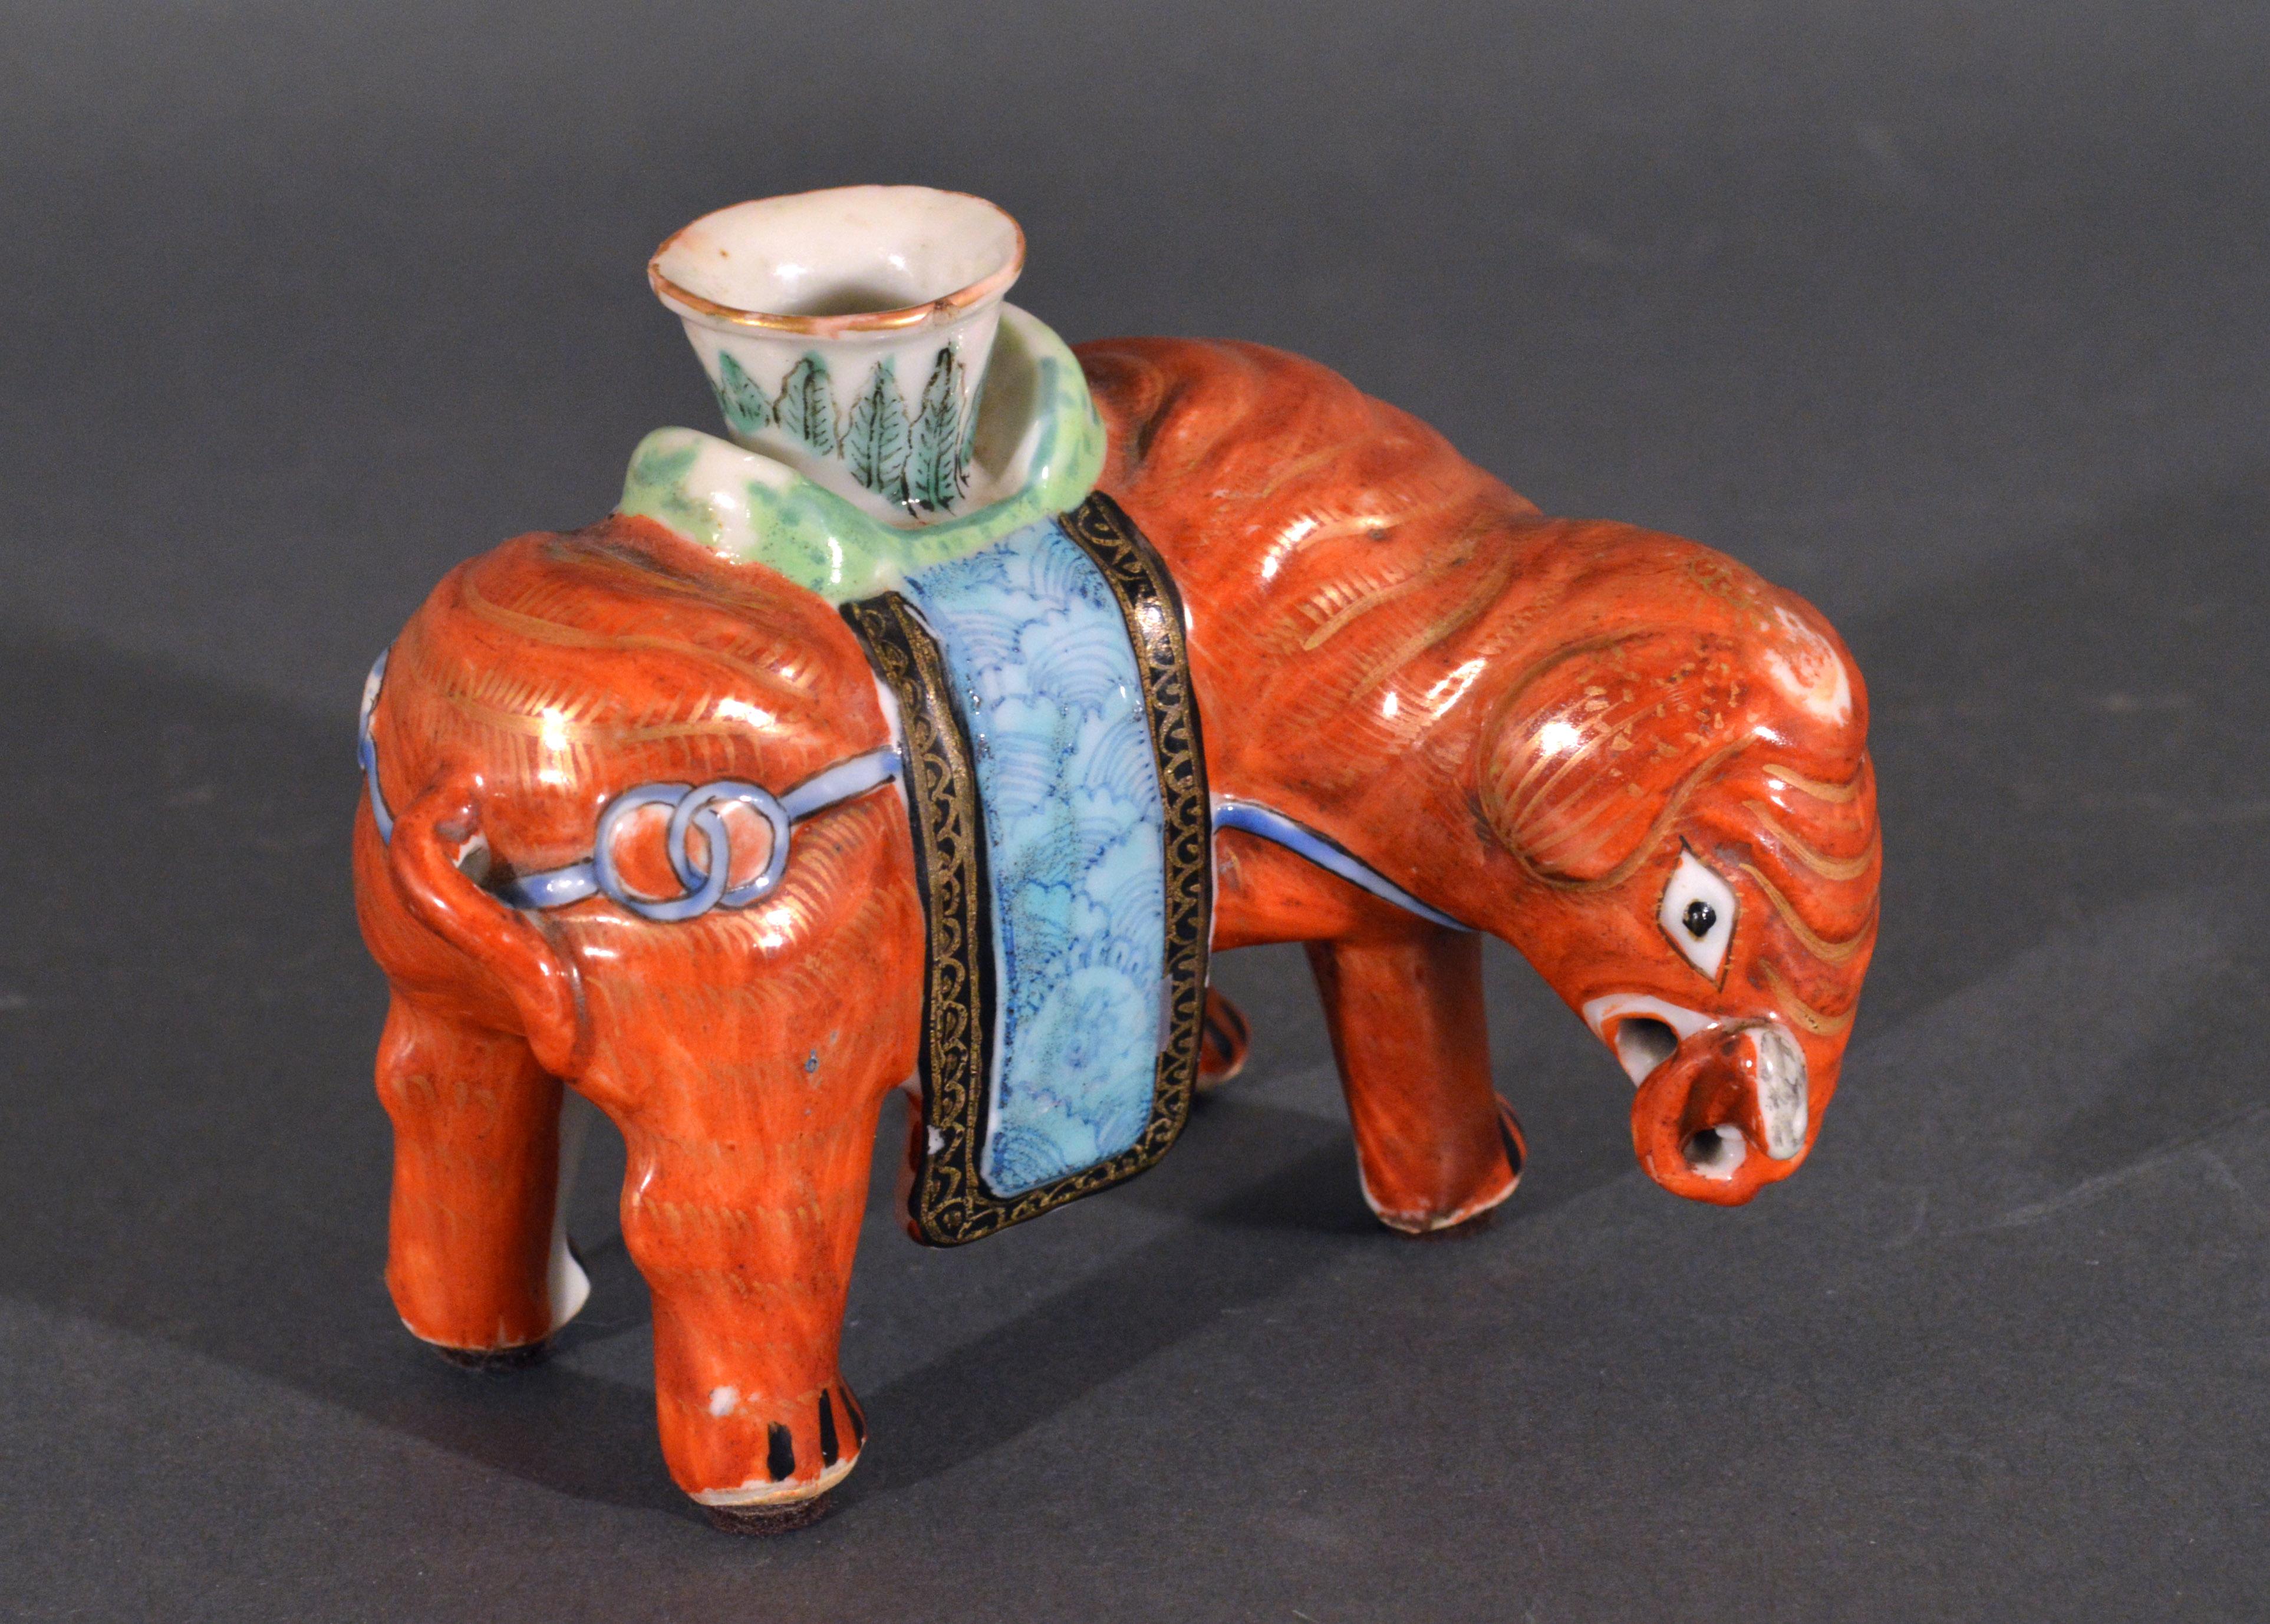 Chinesisches Exportporzellan kleiner Kanton famille rose Elefant modelliert als Kerzenständer,
um 1860 

Der stehende Elefant aus chinesischem Exportporzellan mit erhobenem Rüssel ist eisenrot bemalt und mit Gold verziert. Auf seiner Rückseite